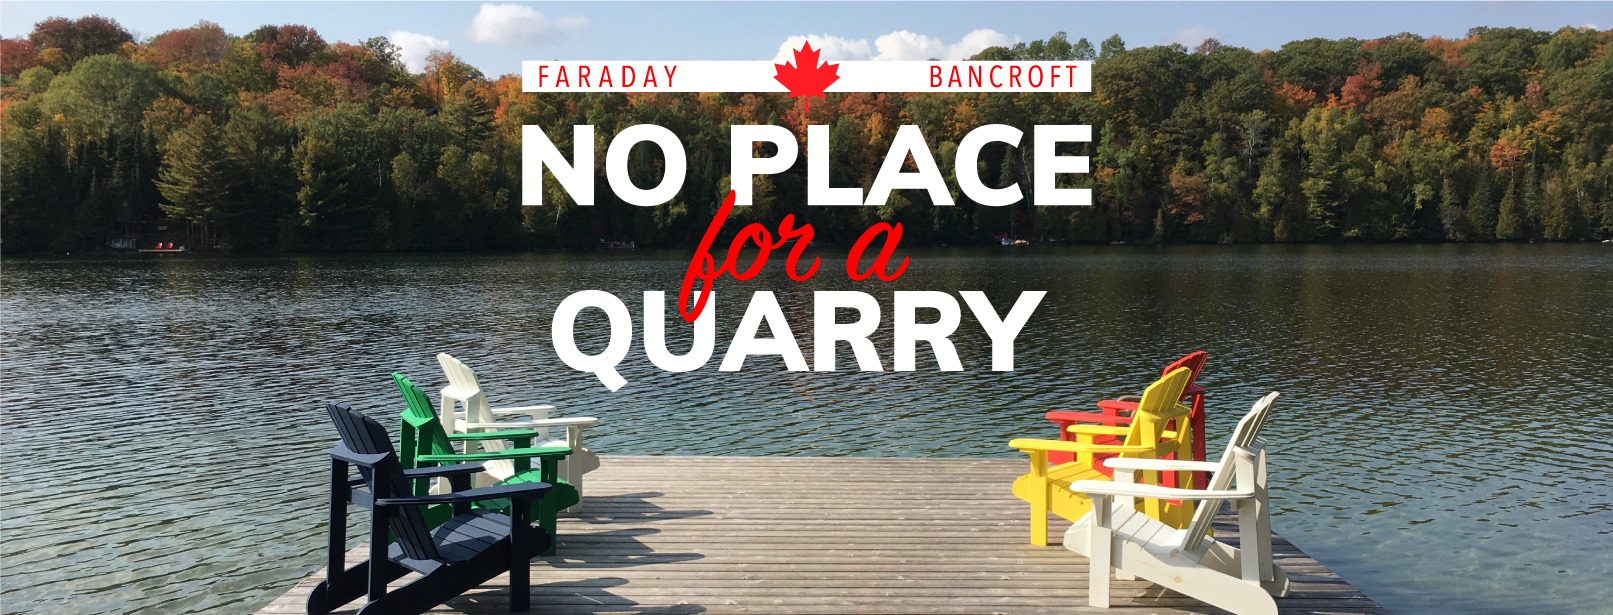 No Place for a Quarry